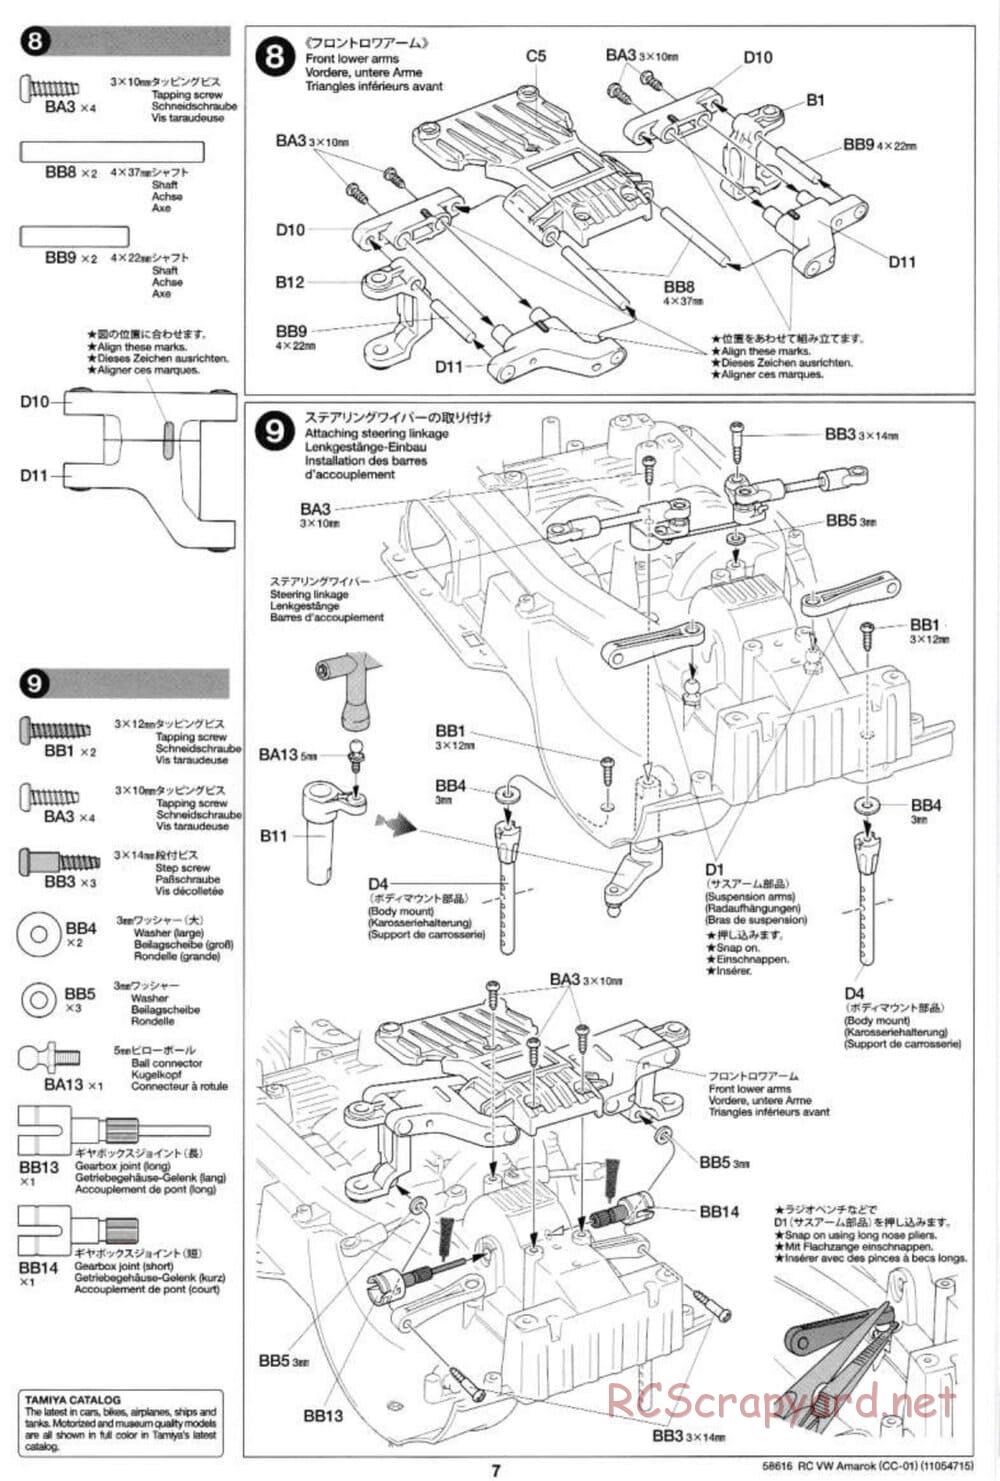 Tamiya - Volkswagen Amarok - CC-01 Chassis - Manual - Page 7